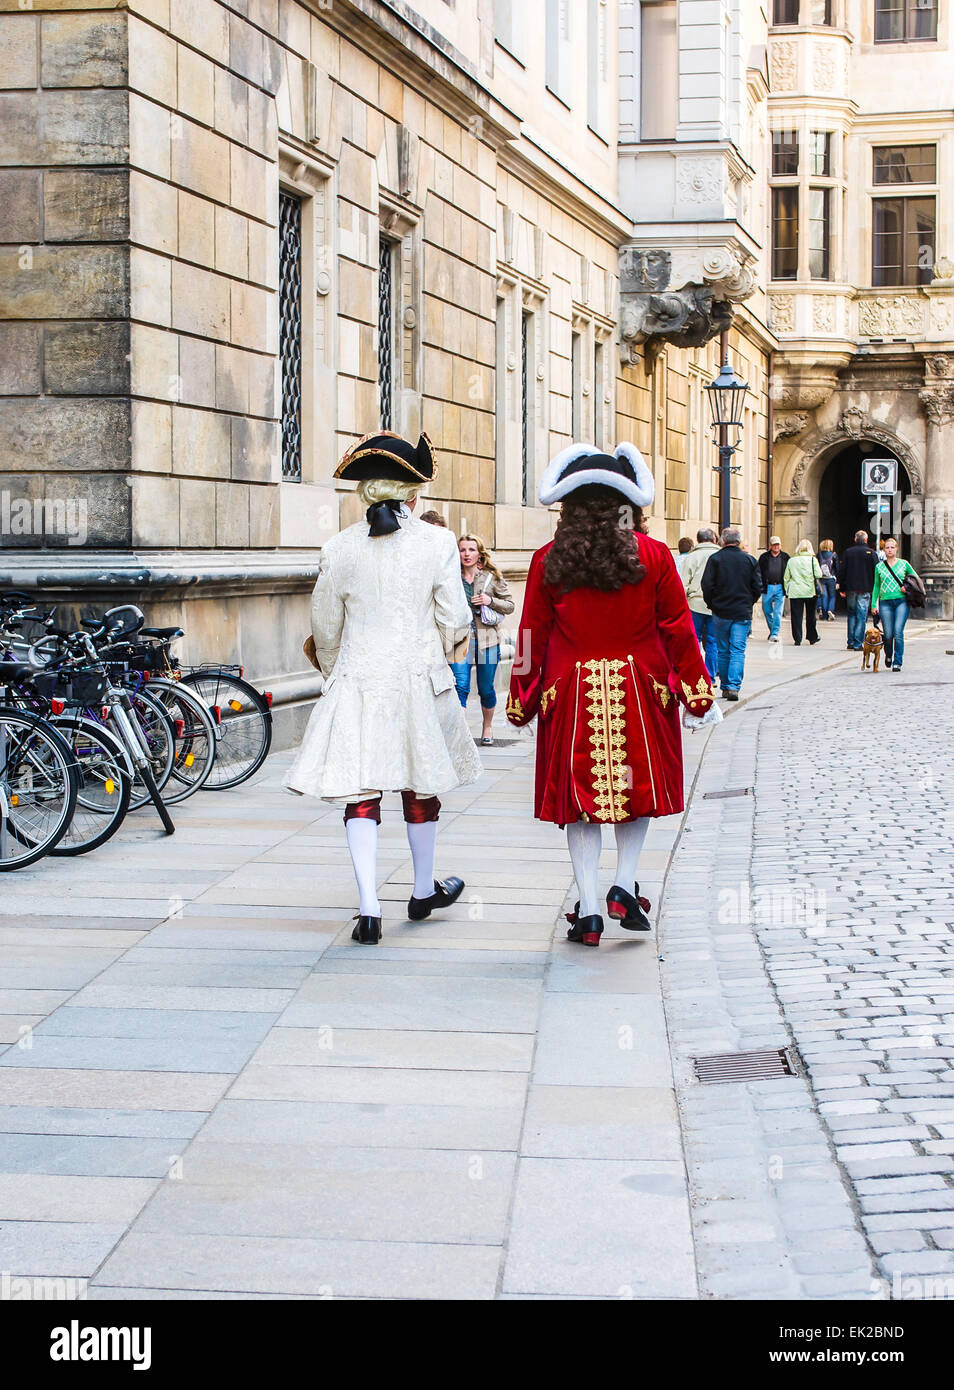 Kostüm gekleidete Akteure, die für Touristen im königlichen Palast zu sehen  sind ein Spaziergang durch den historischen Stadtteil Dresden, Ger  durchzuführen Stockfotografie - Alamy